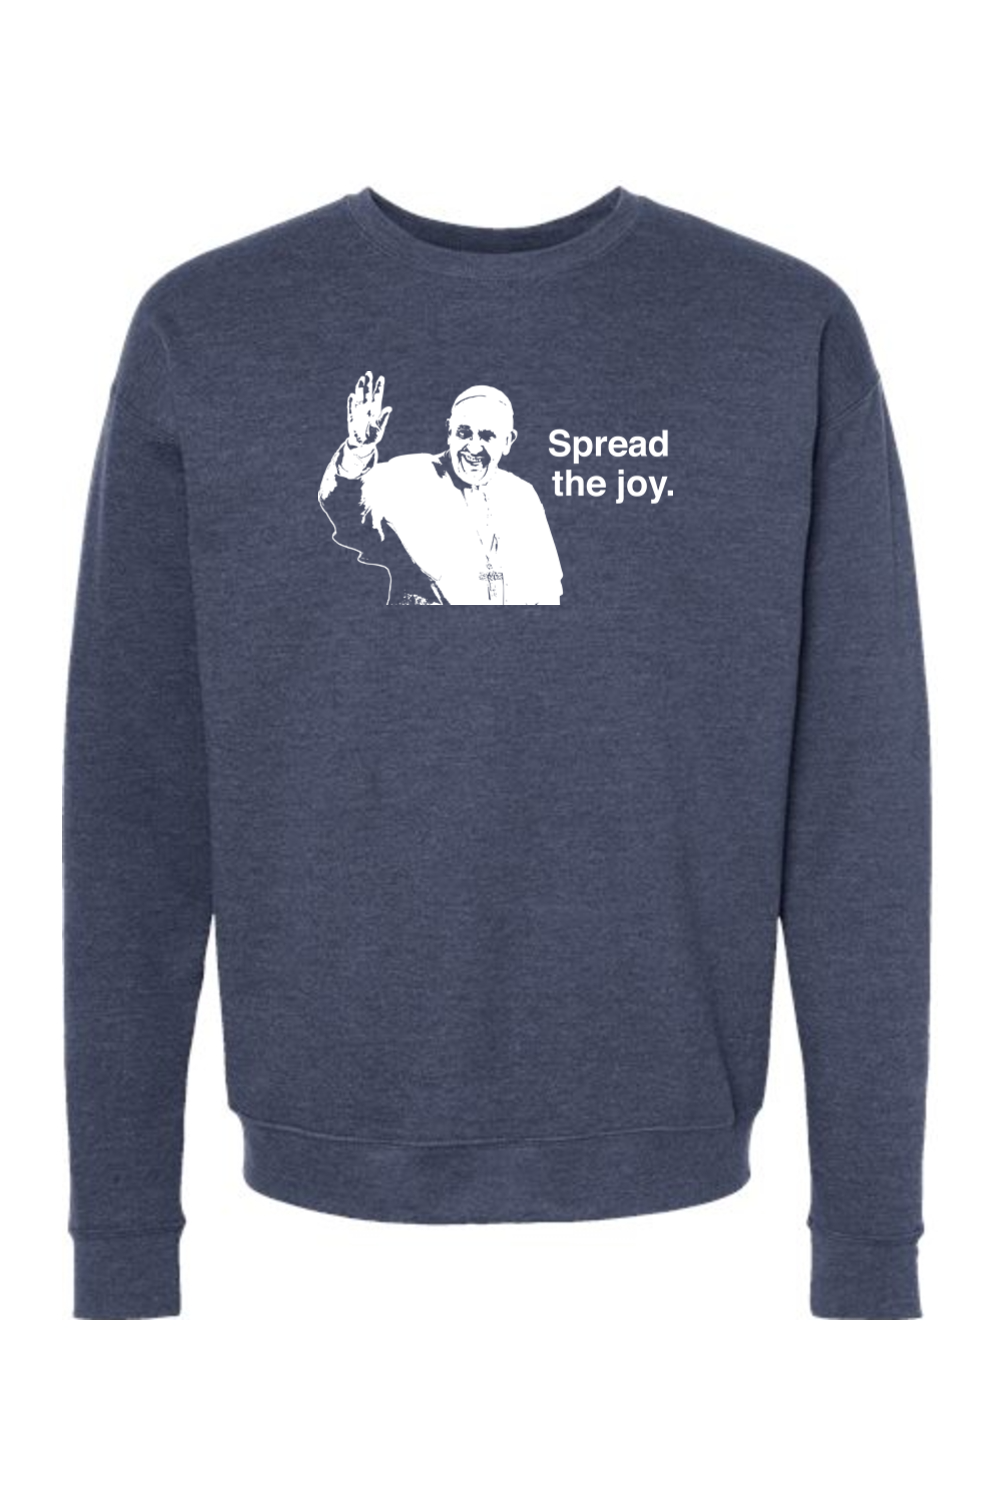 Spread the Joy - Pope Francis Crewneck Sweatshirt